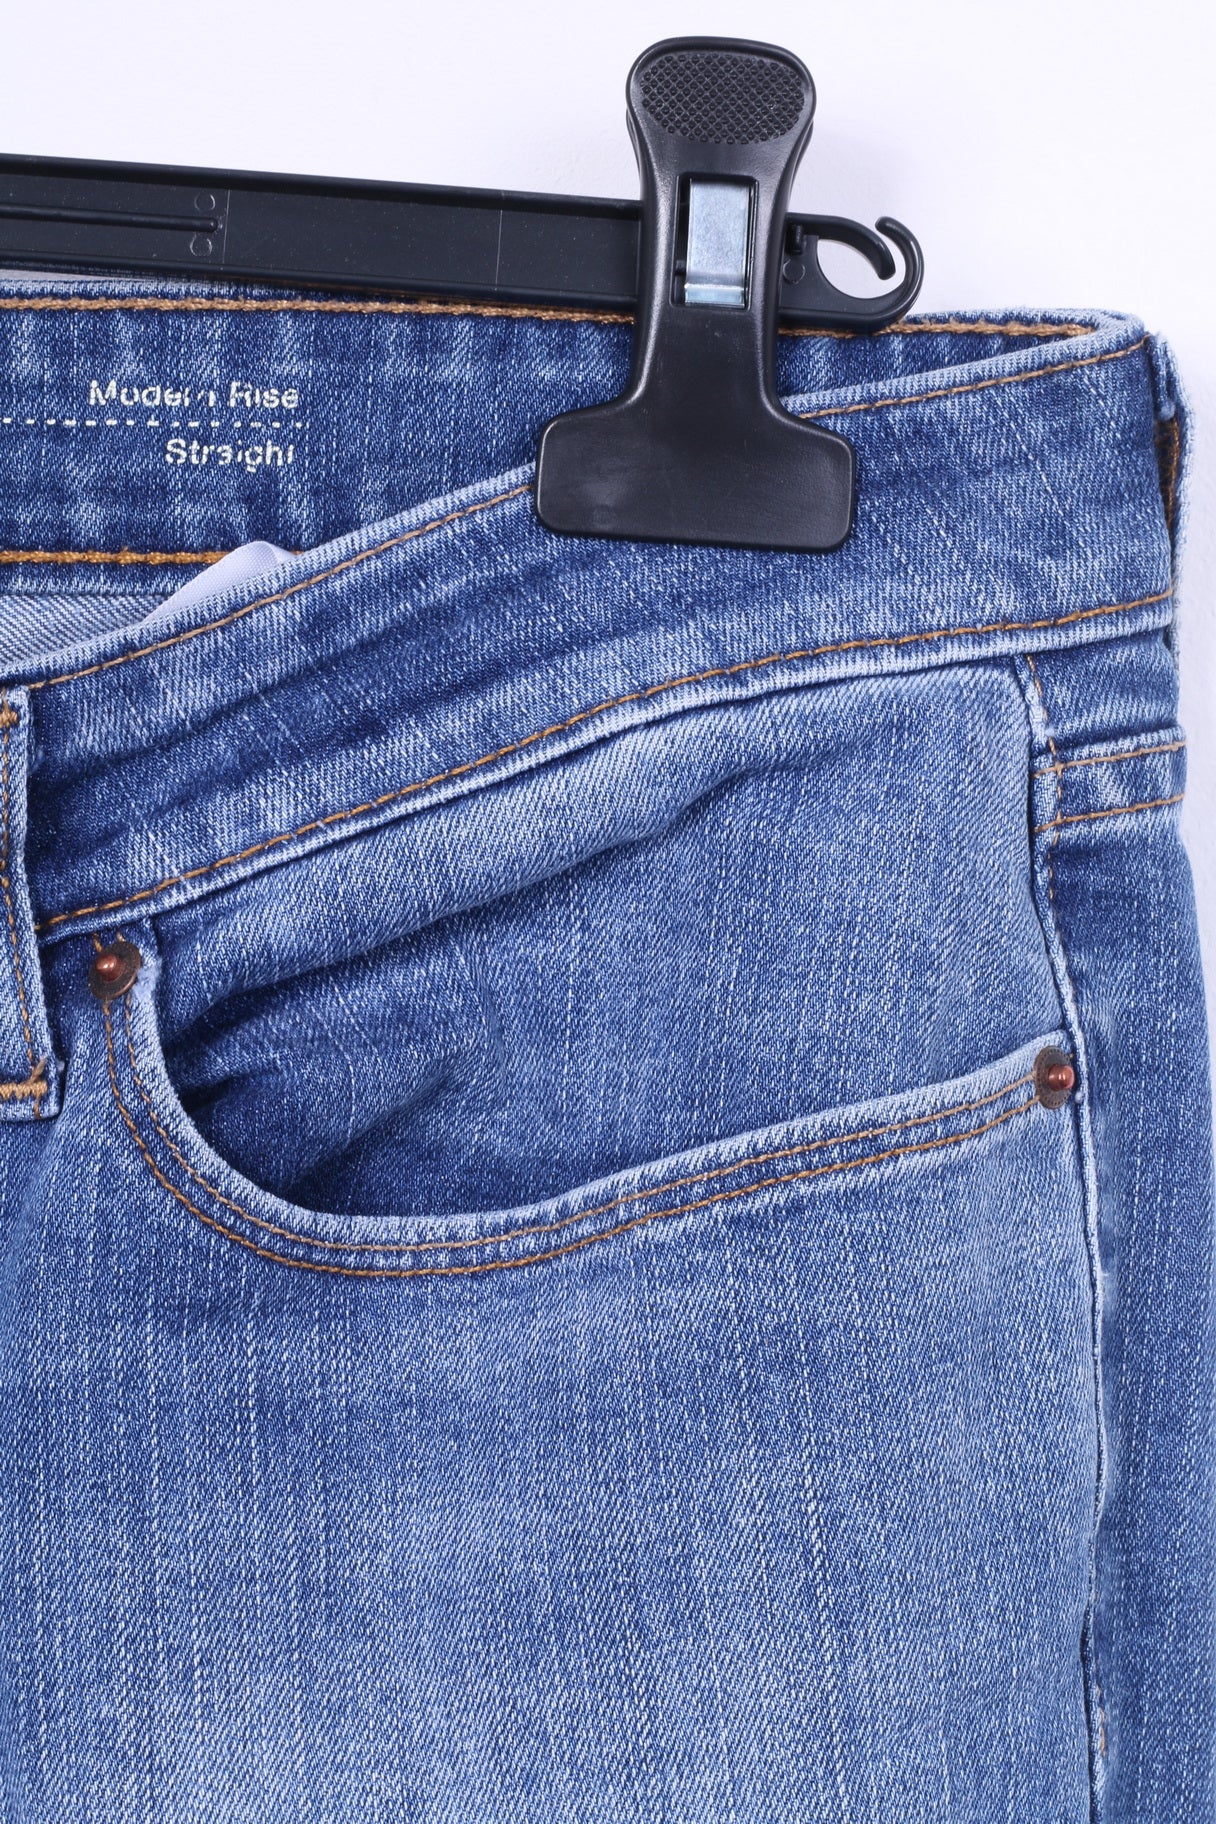 Levis Womens 32 Trousers Jeans Slight Curve Straight Blue Cotton Denim